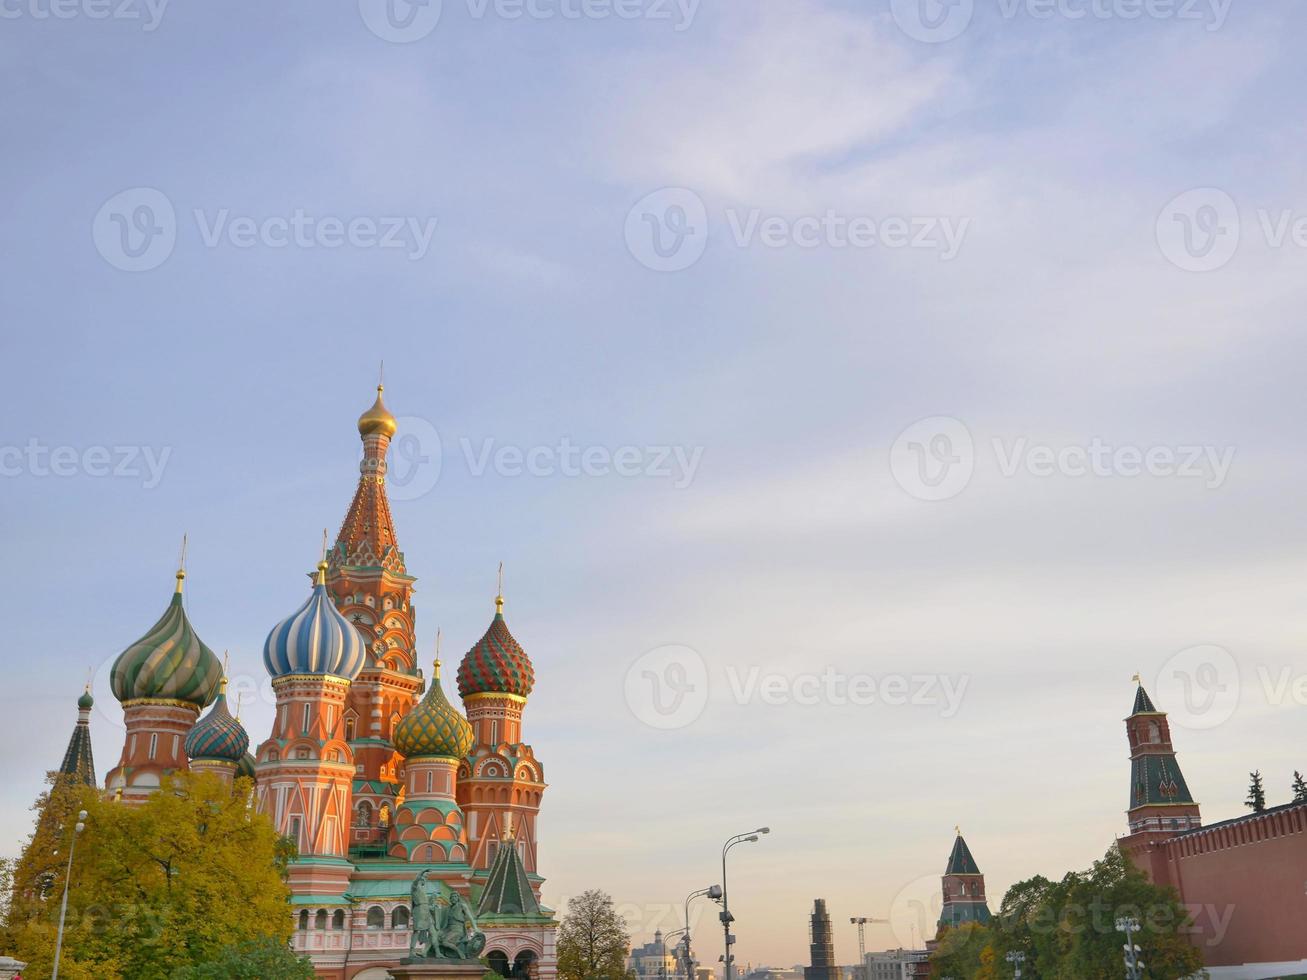 st. catedral do manjericão na praça vermelha de moscou kremlin, rússia foto